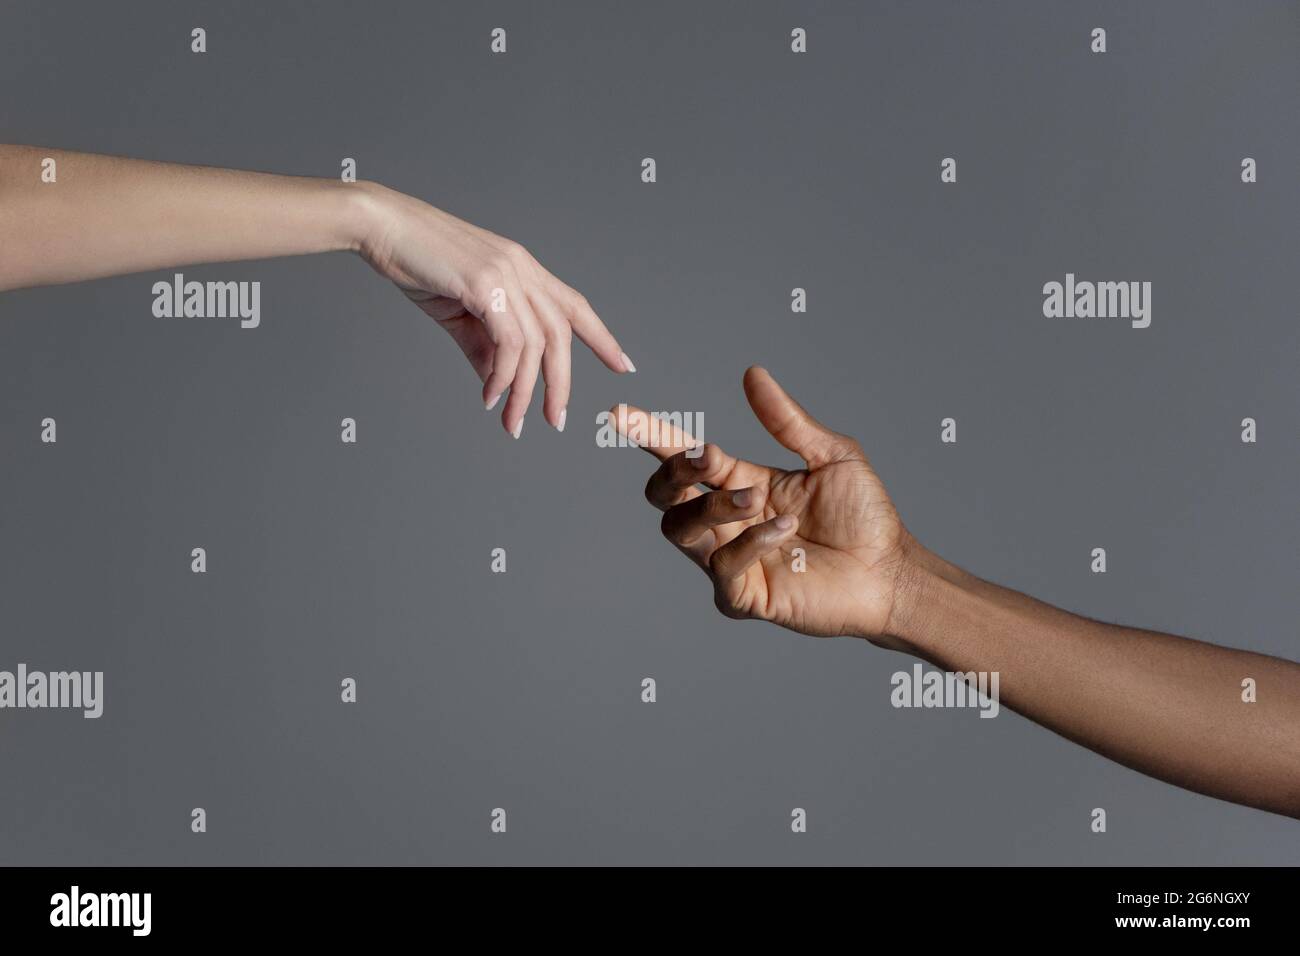 Mani maschili e femminili che si raggiungono l'un l'altro copiando la creazione del segno di Adamo. Foto Stock